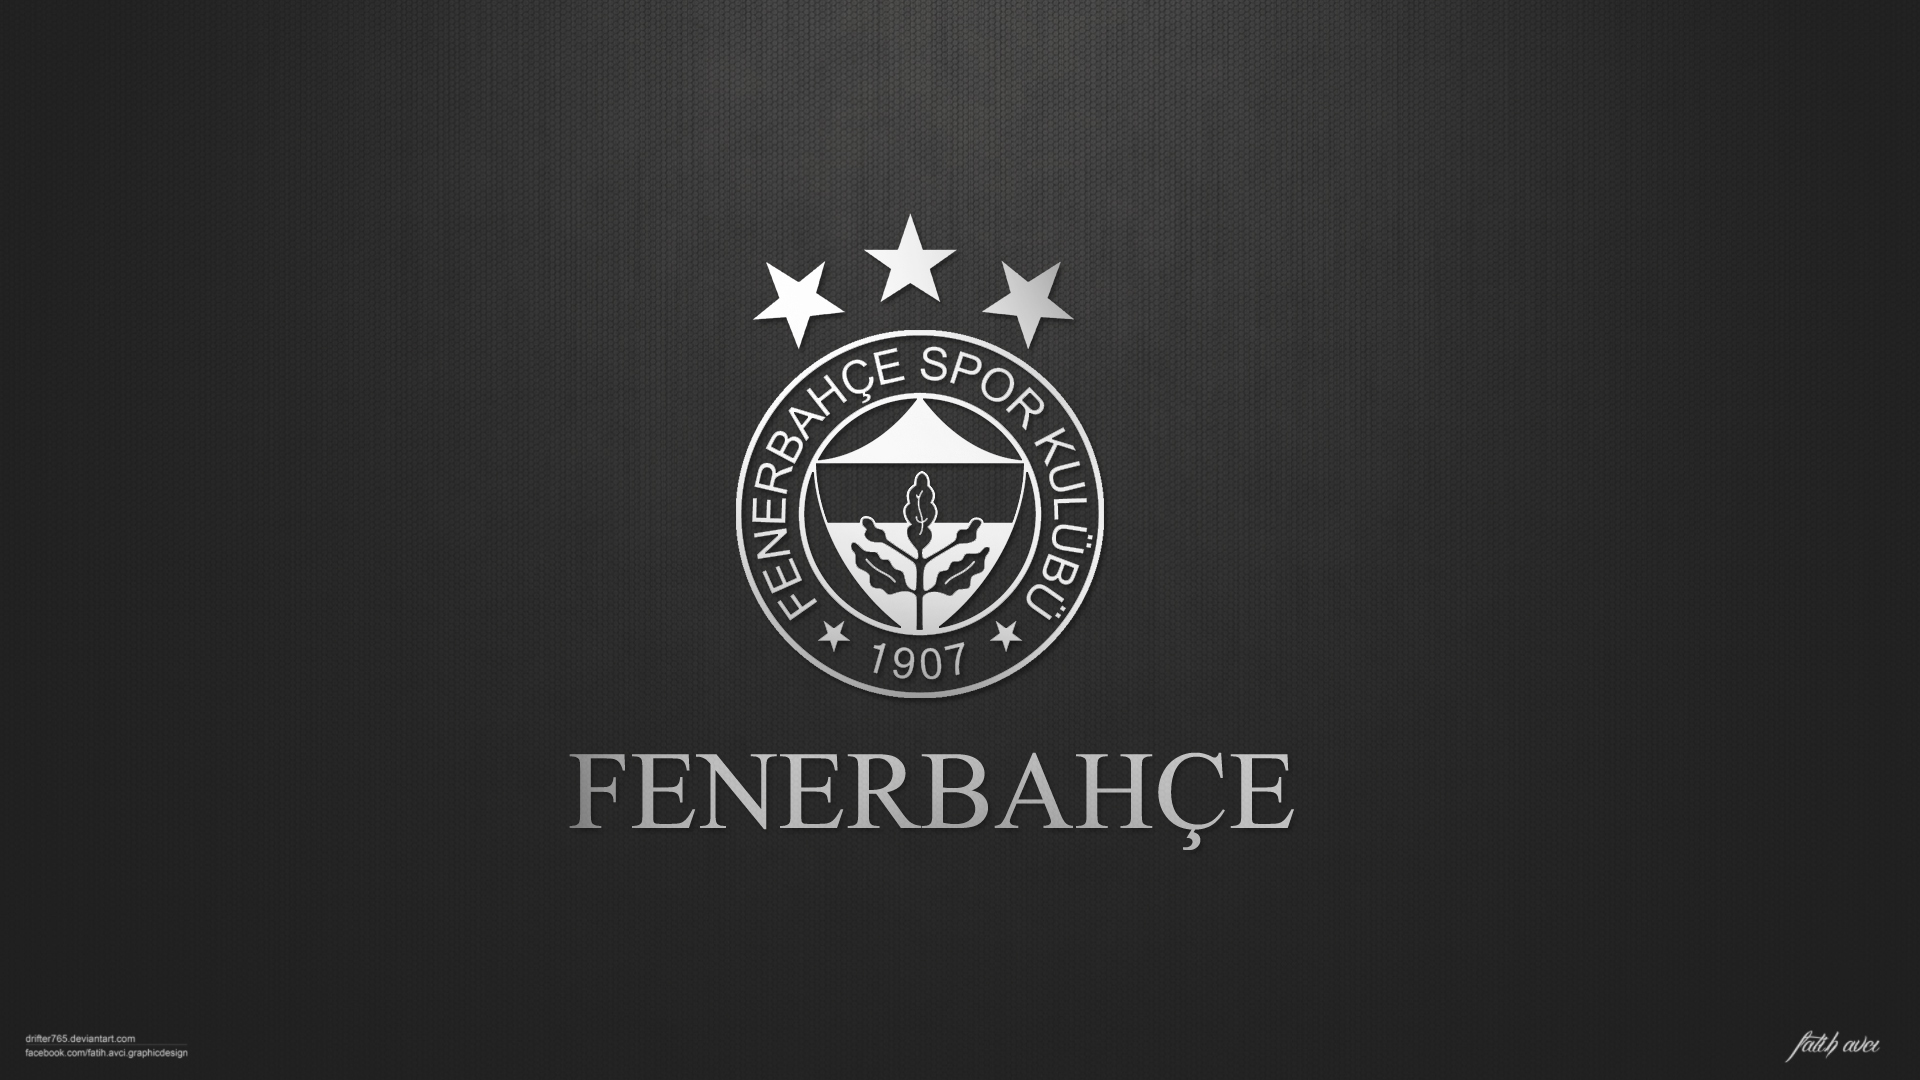  Fenerbahçe Duvar Kağıtları